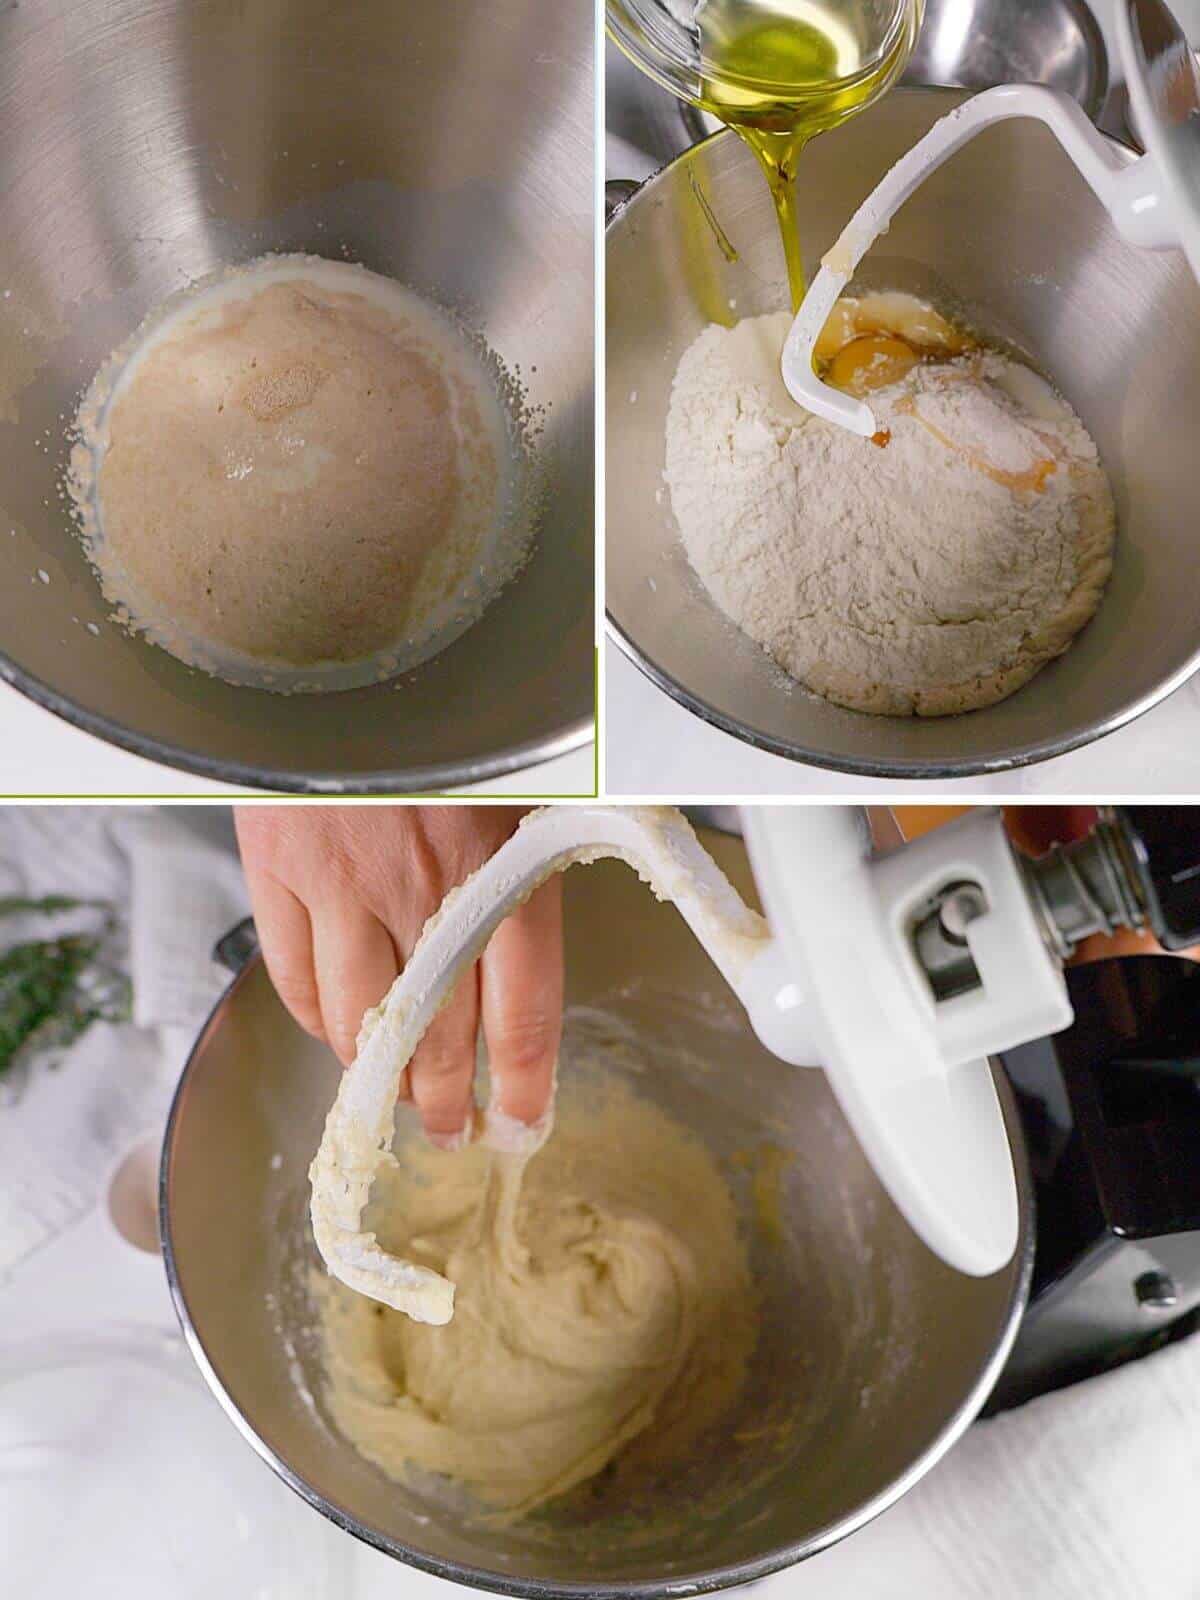 Making sticky dough.